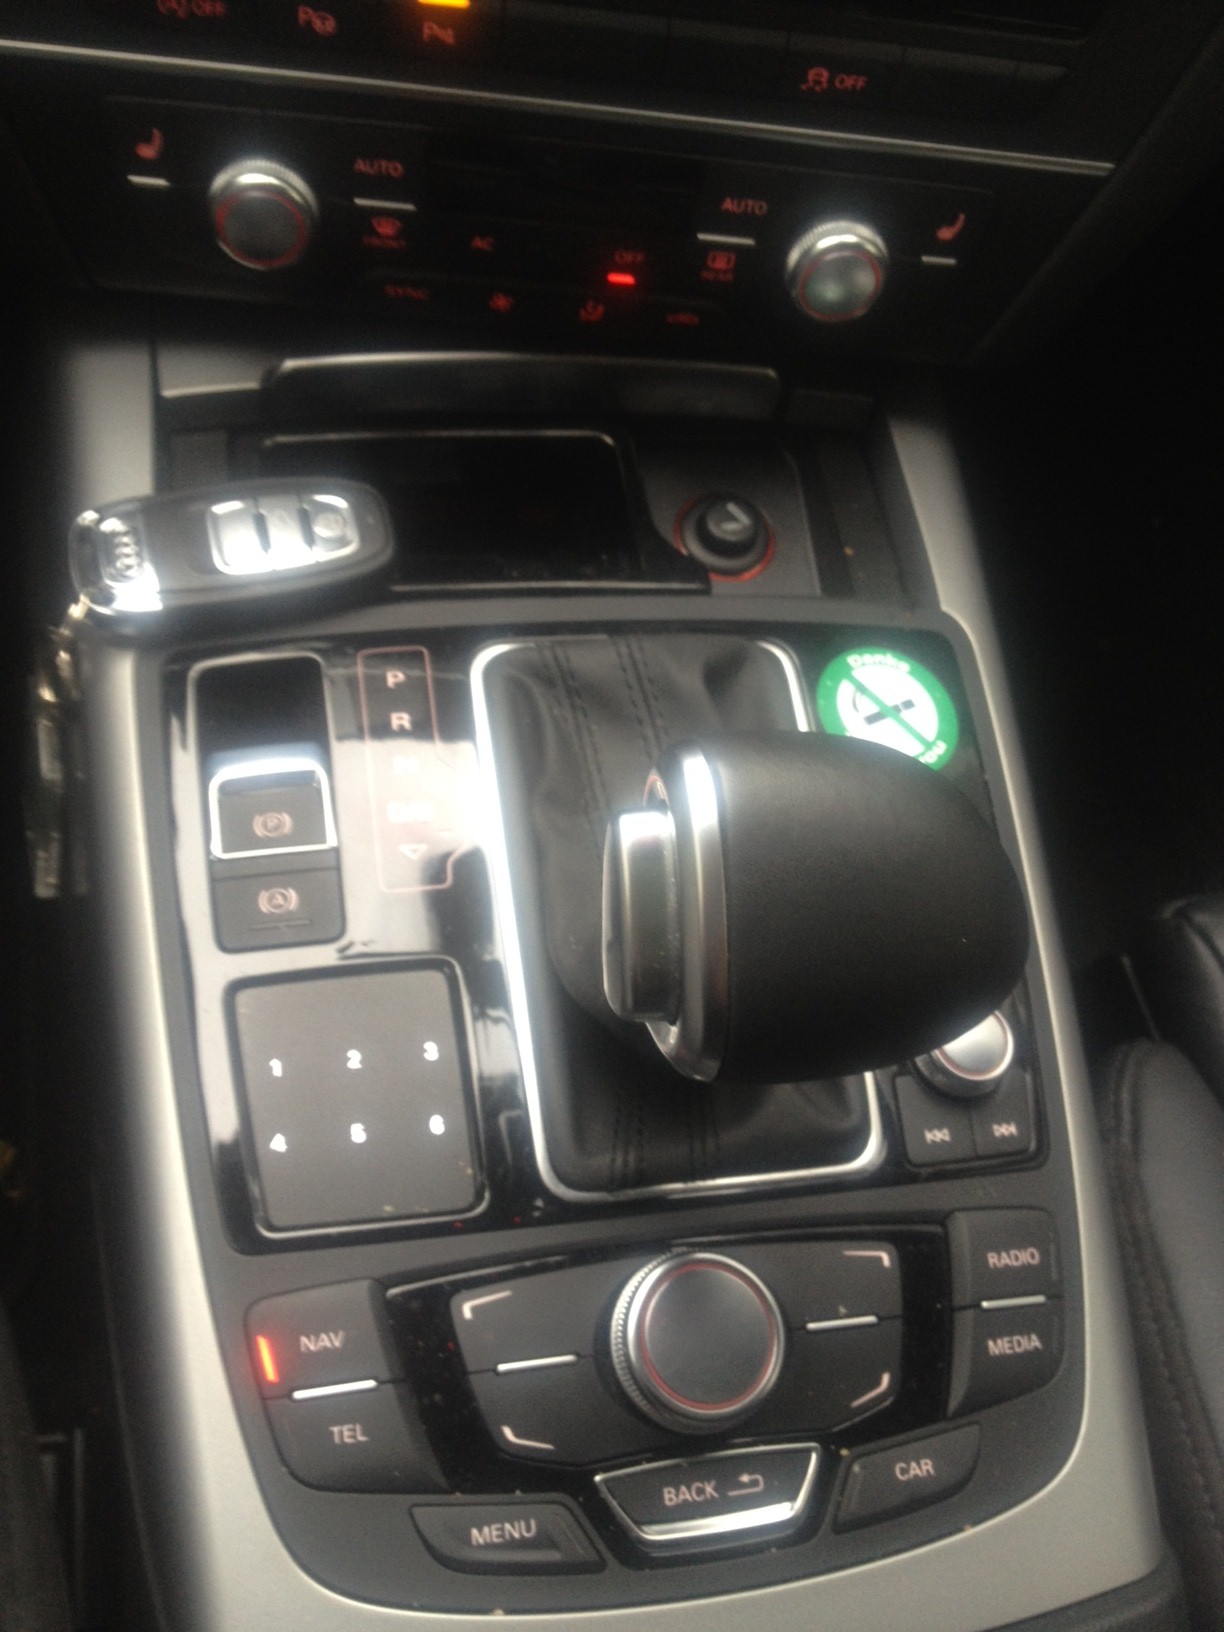 Audi controls